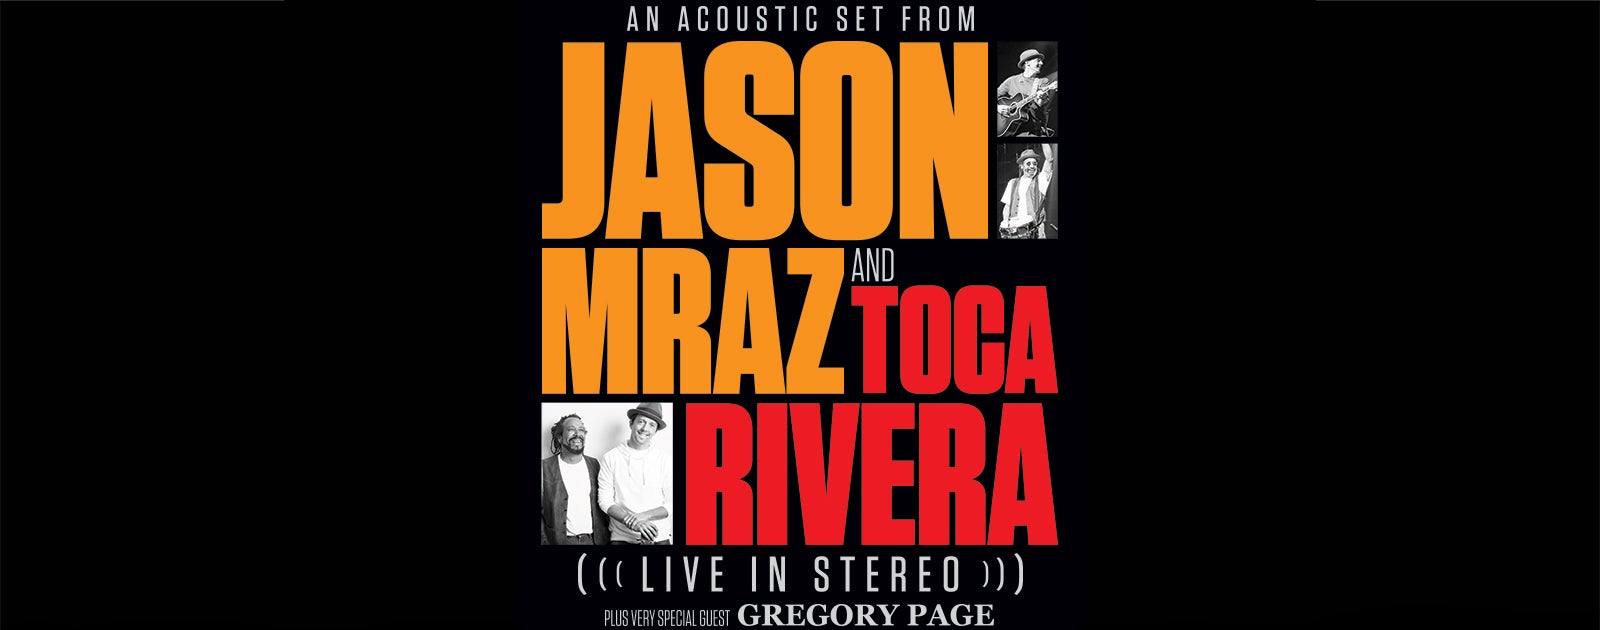 Jason Mraz and Toca Rivera "Live In Stereo"